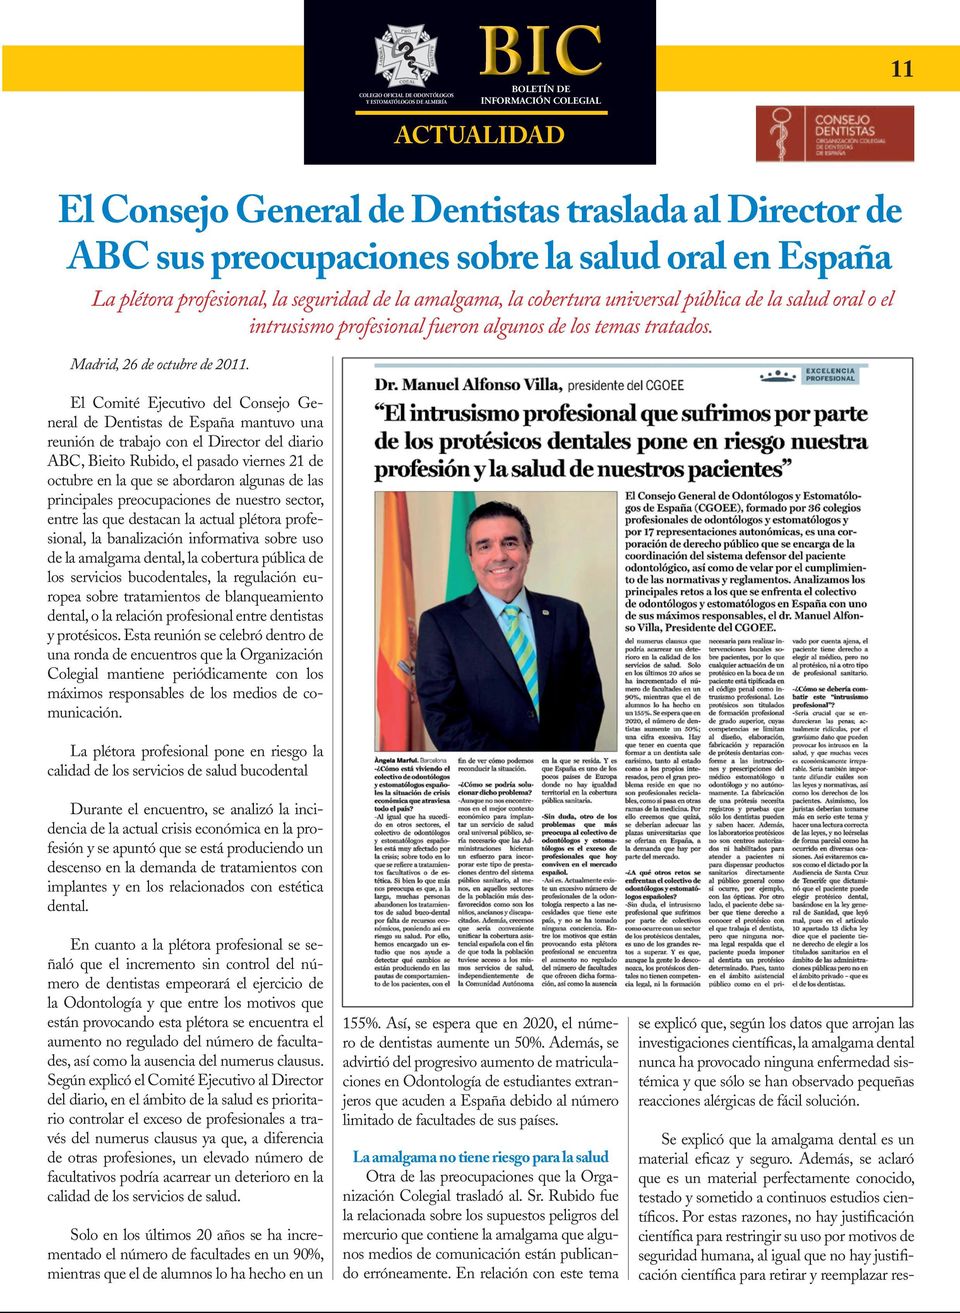 El Comité Ejecutivo del Consejo General de Dentistas de España mantuvo una reunión de trabajo con el Director del diario ABC, Bieito Rubido, el pasado viernes 21 de octubre en la que se abordaron